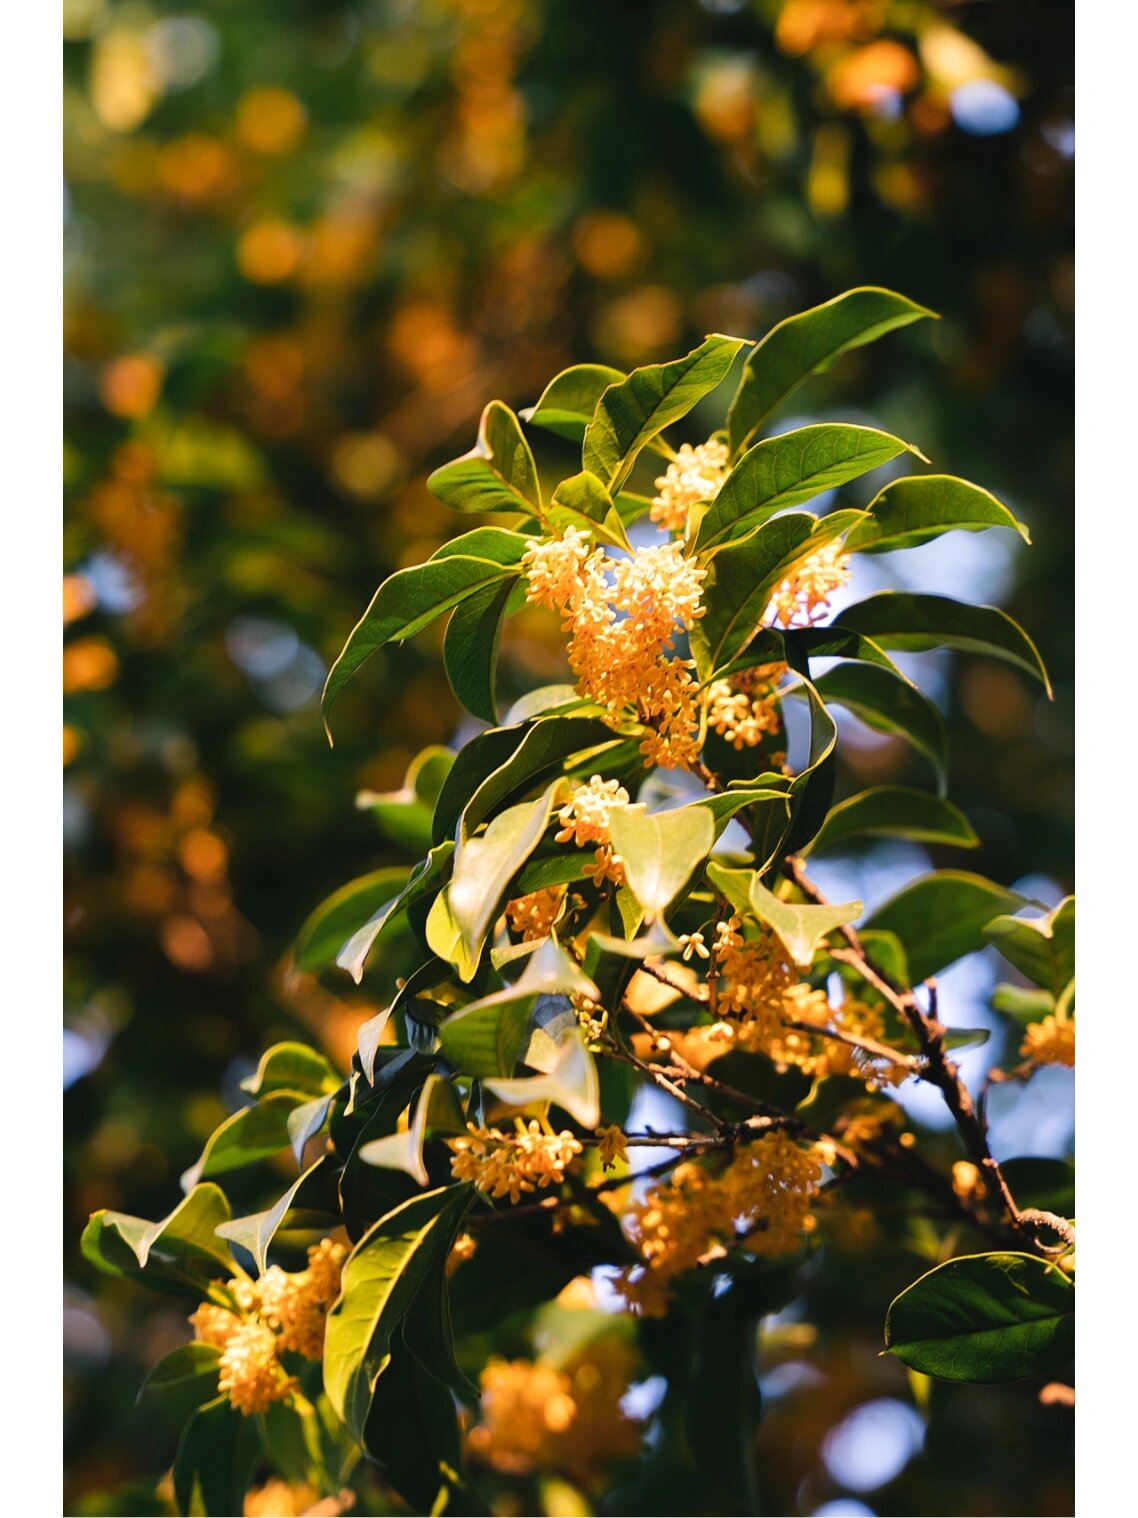 桂花又称木樨花,是杭州的市花,当下满城金桂芬香四溢,不愧钱塘三秋桂